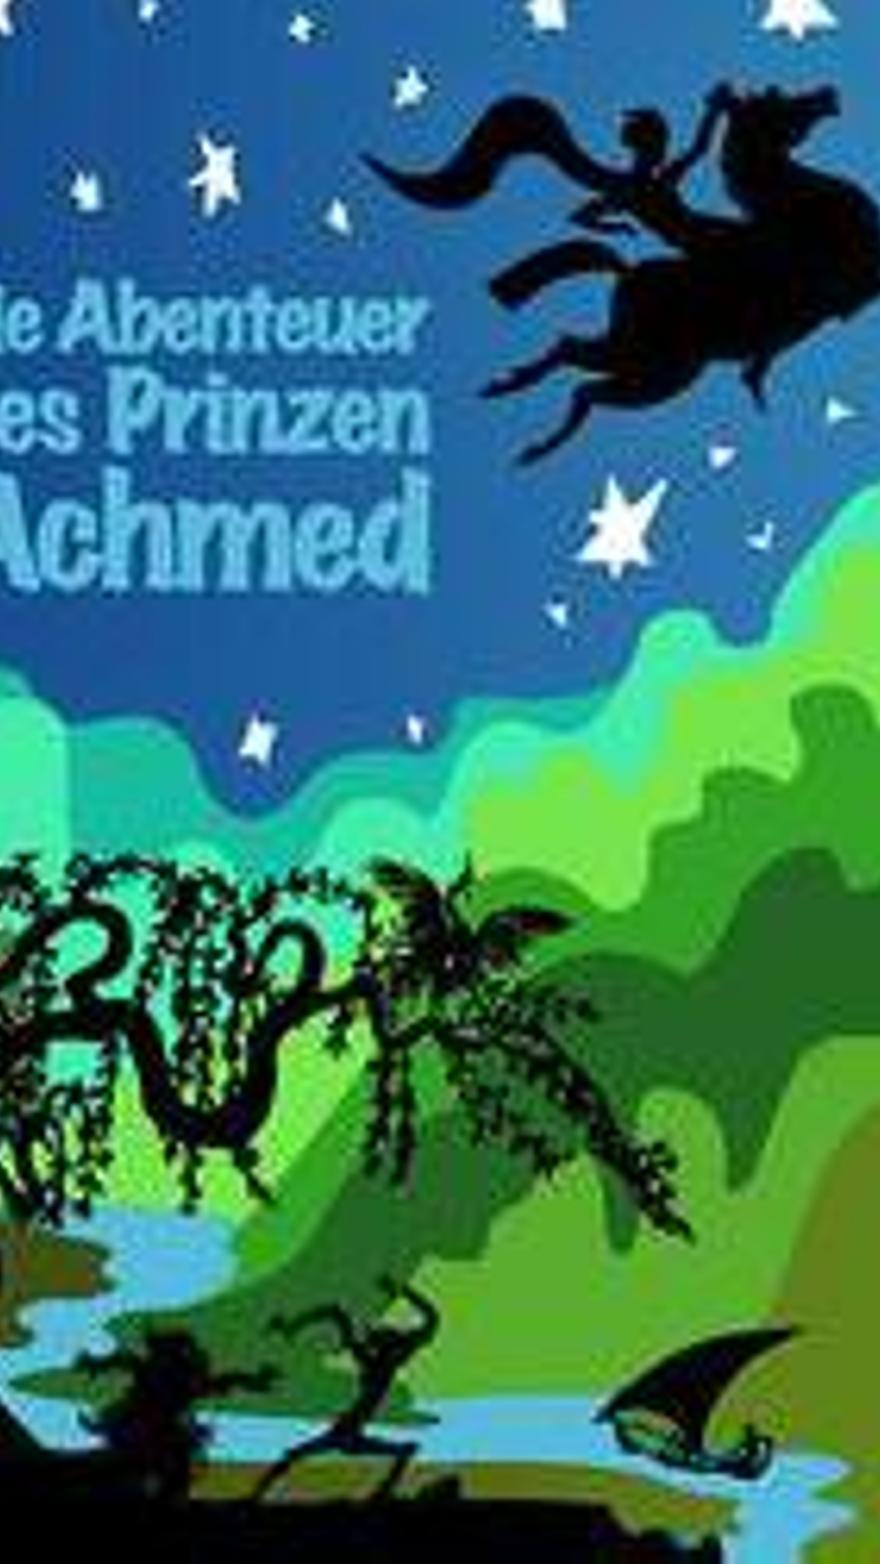 Las aventuras del príncipe Ahmed